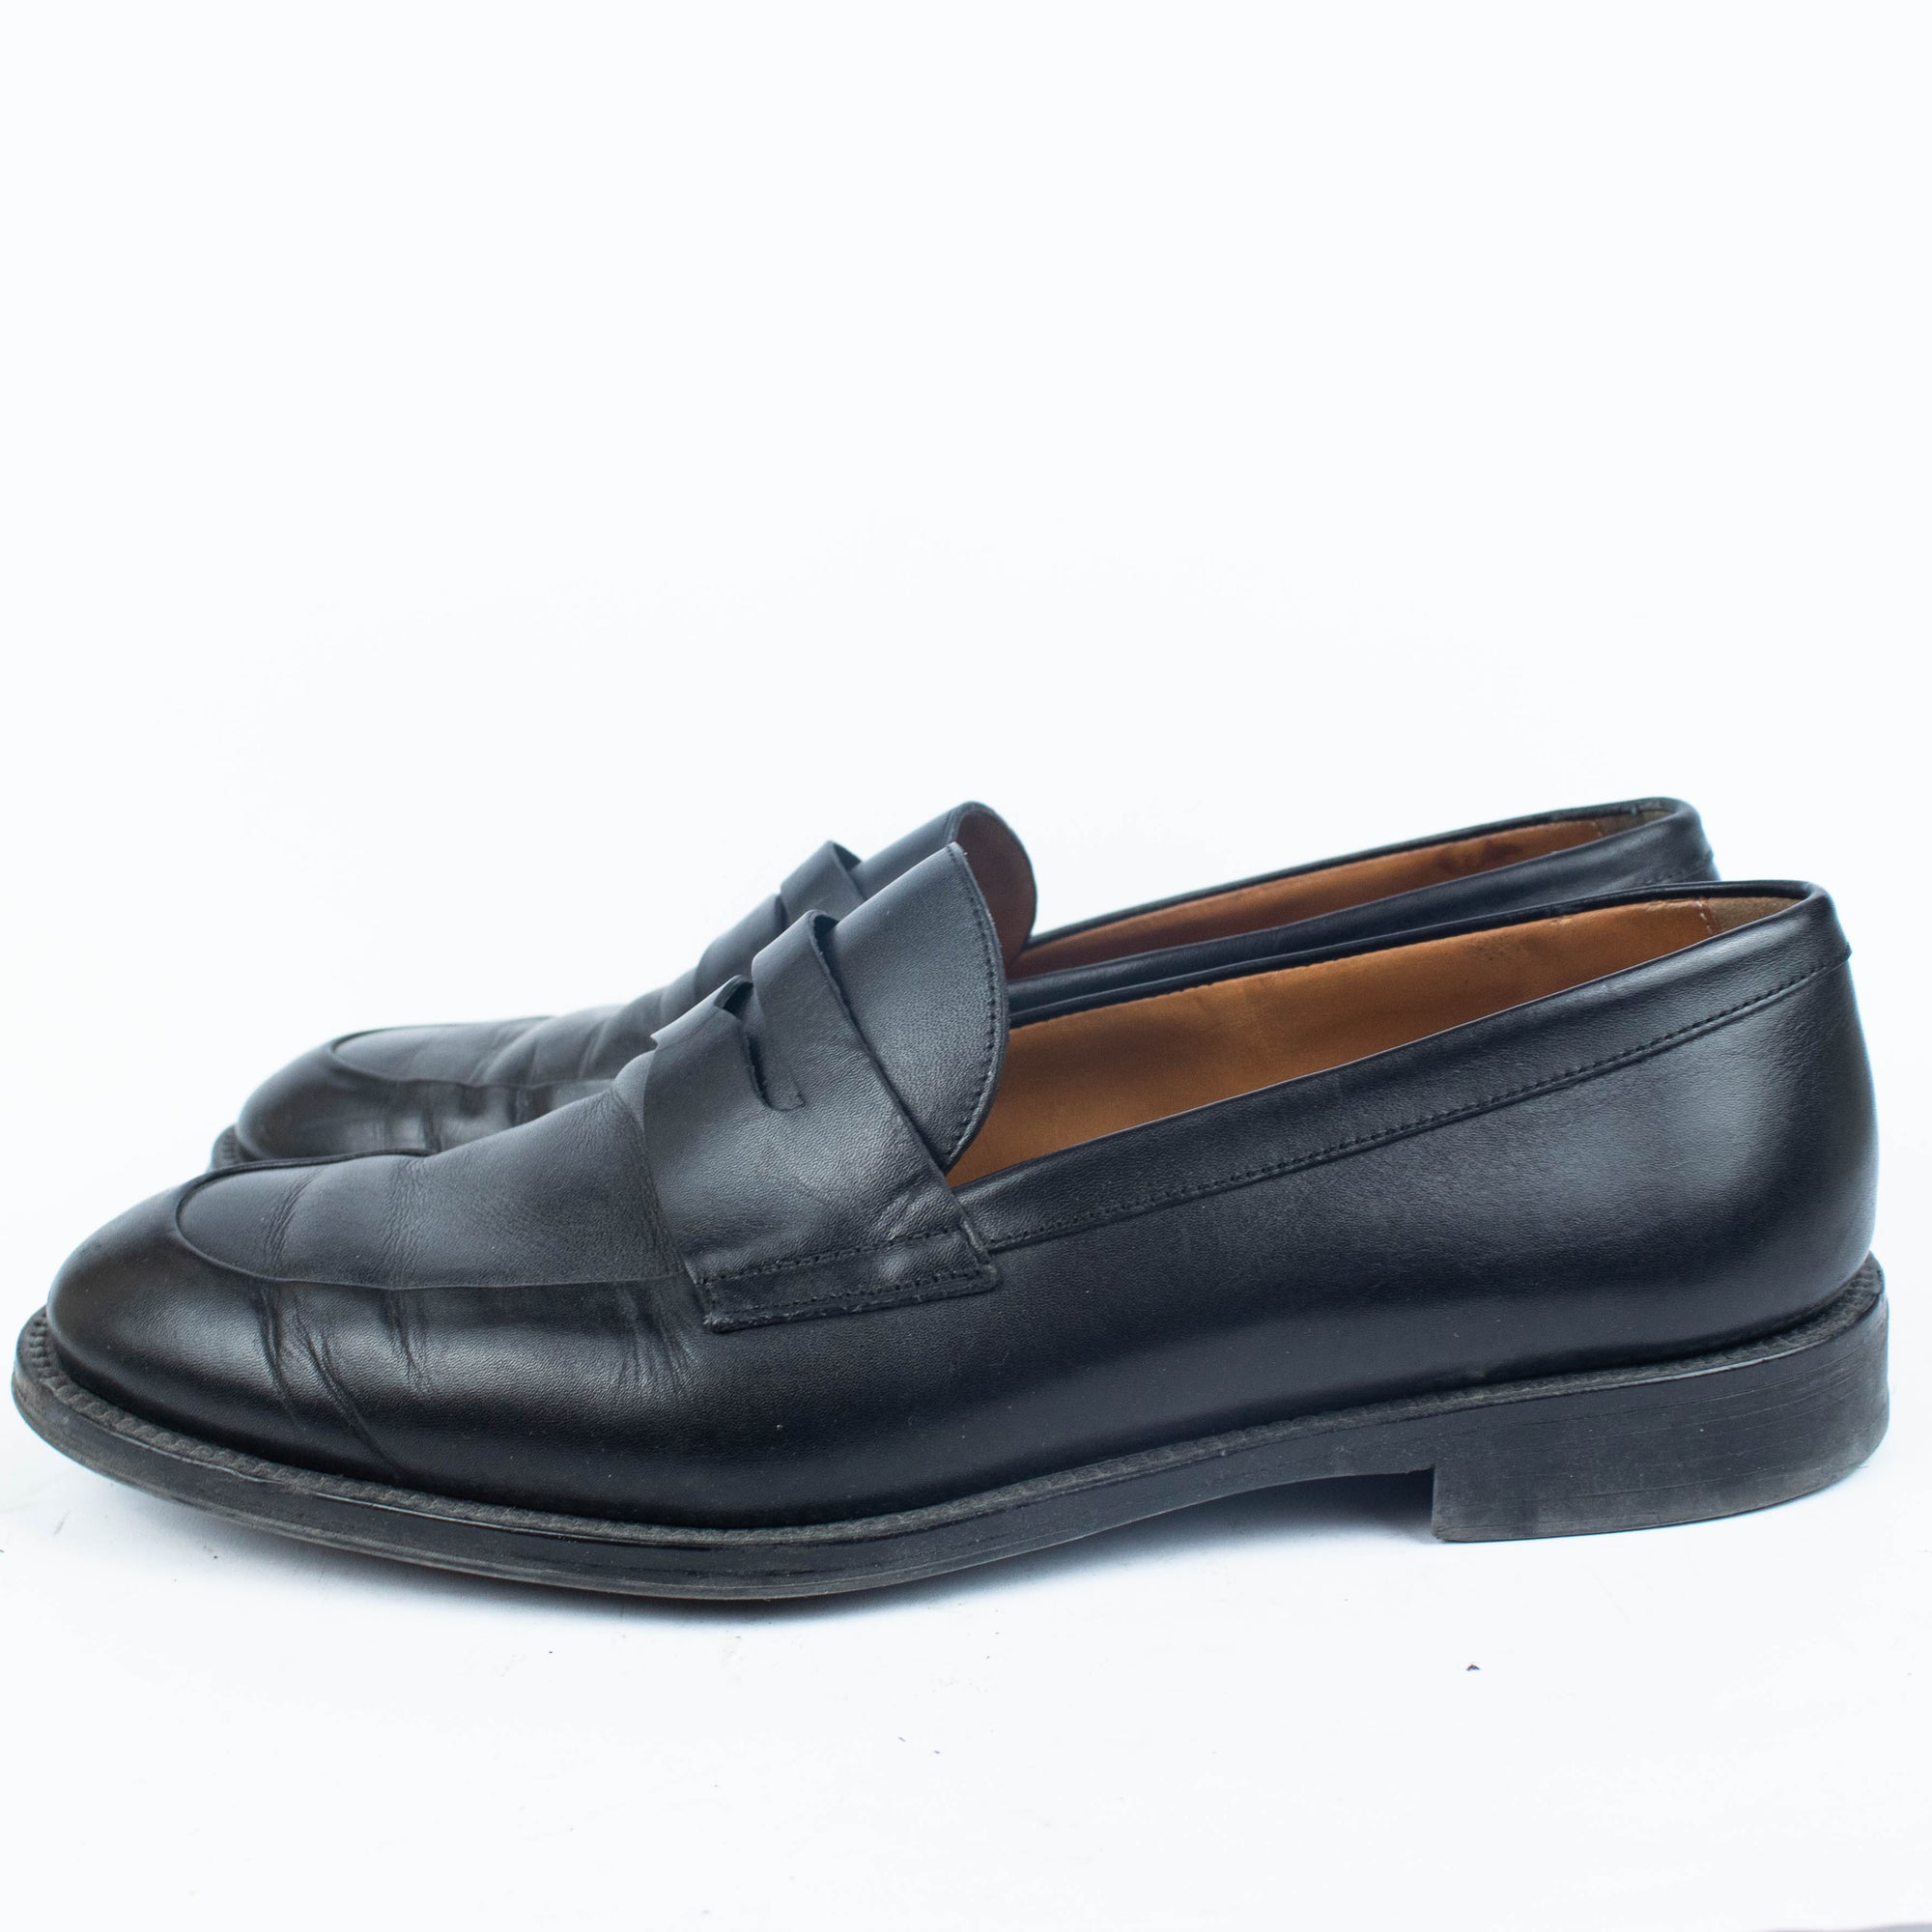 Massimo Dutti Shoes